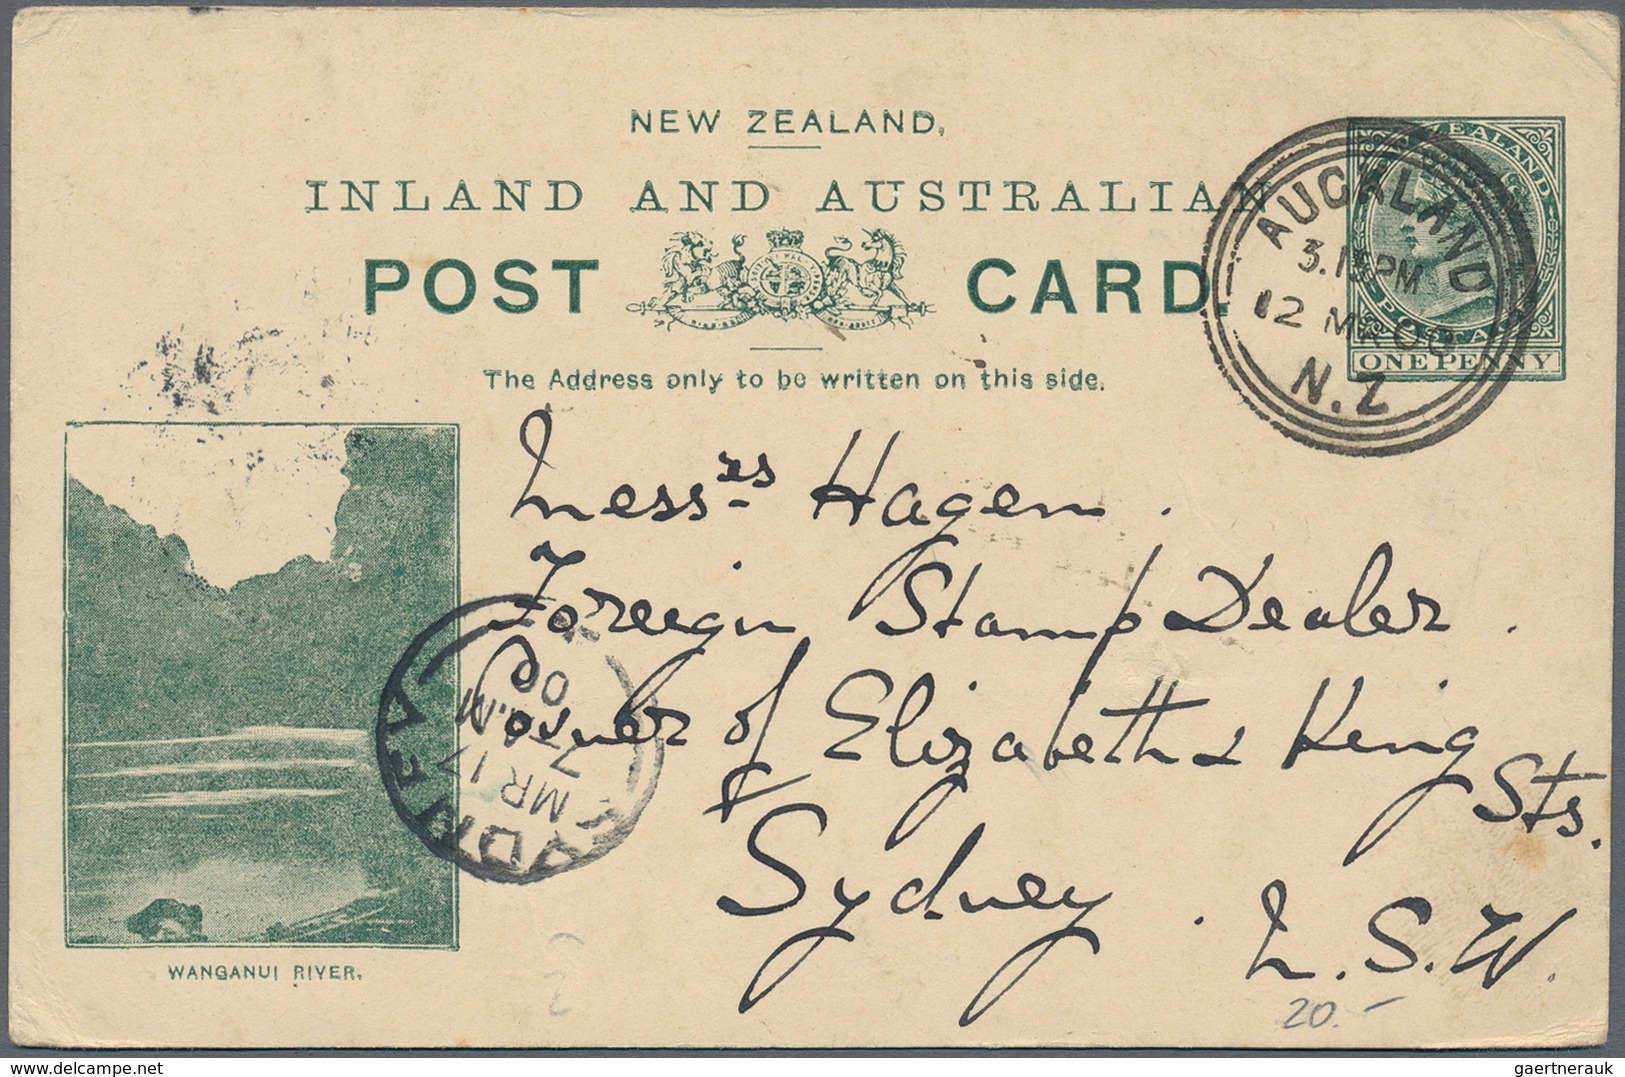 Neuseeland: 1889-1980, vielseitige Partie mit rund 200 Briefen, Belegen, Ganzsachen und FDC, dabei B